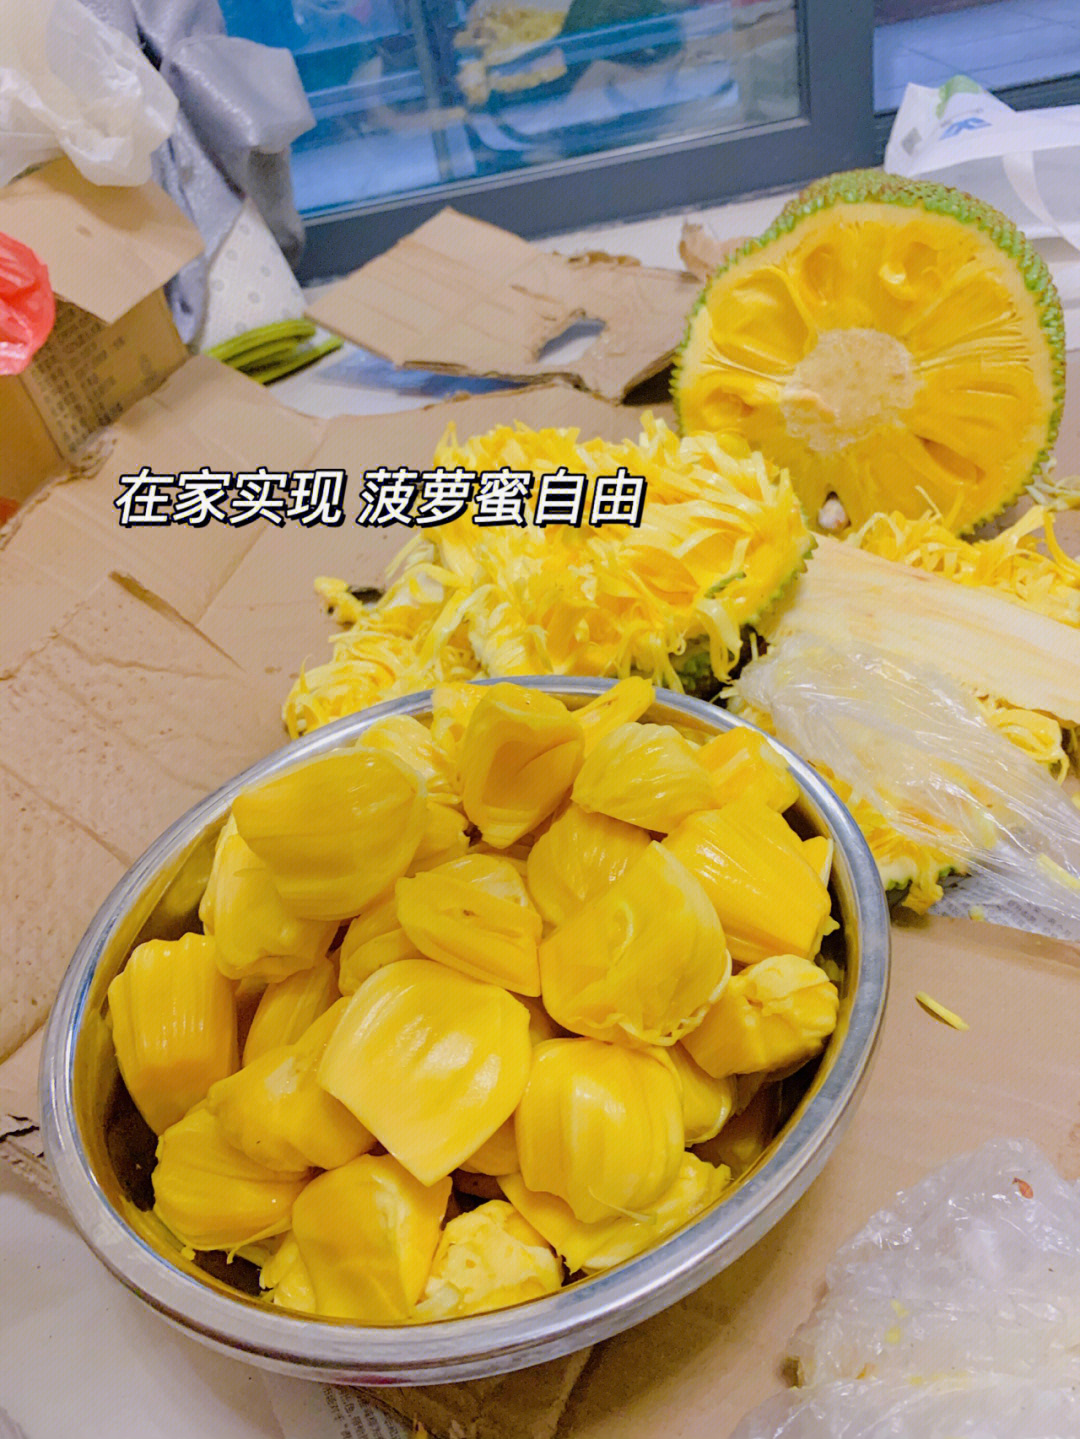 菠萝蜜罐头家庭自制法图片